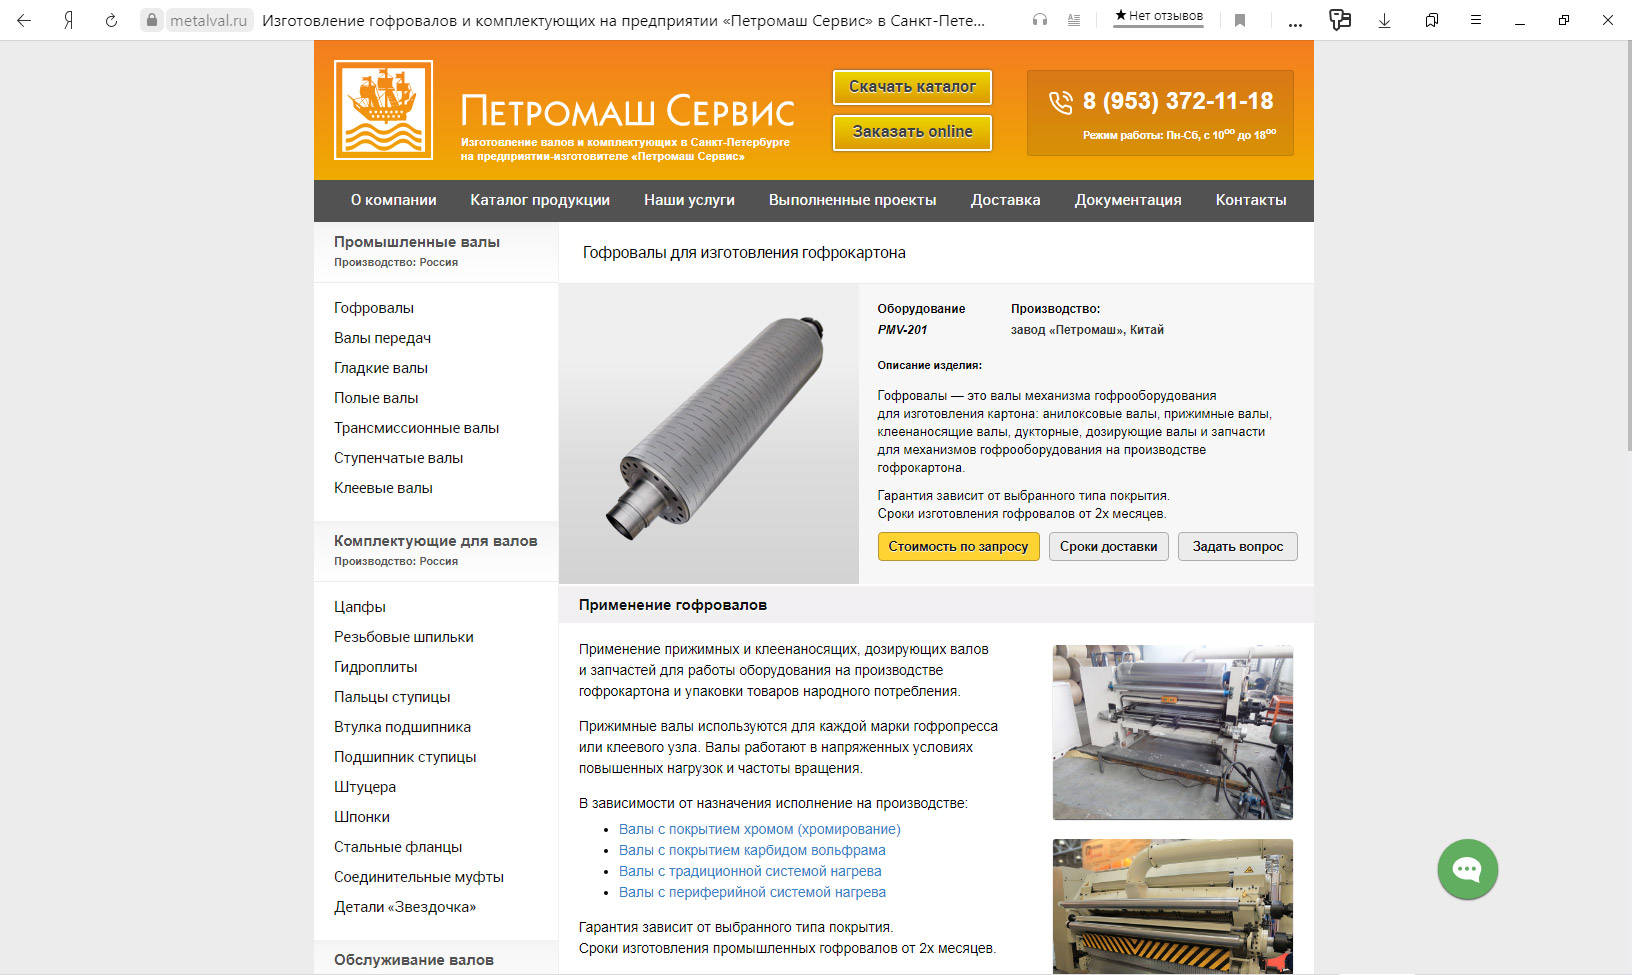 Карточка описания оборудования на сайте «МеталВал.ру»